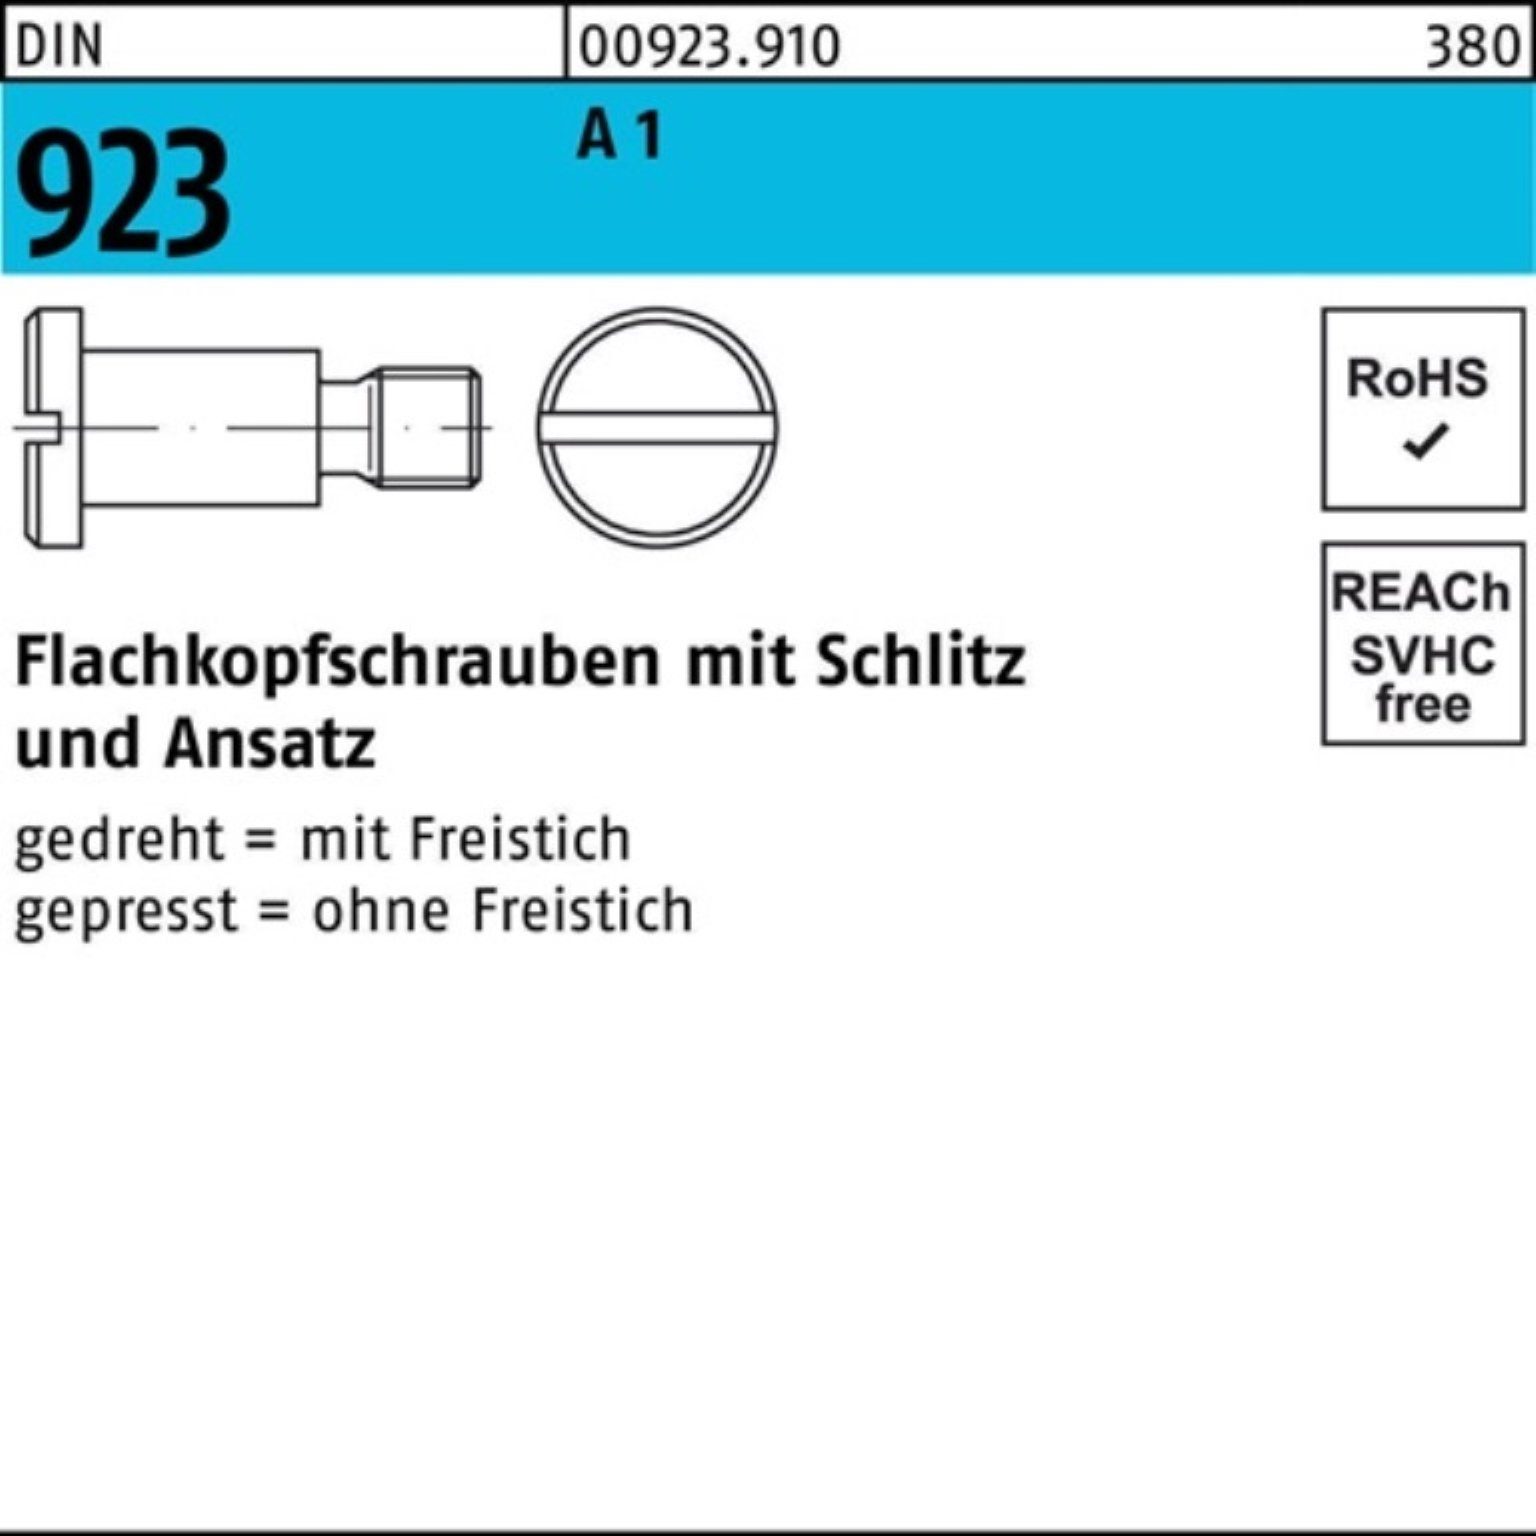 Reyher Schraube 100er Pack DIN 8x11,0 A 923 1 Flachkopfschraube Schlitz/Ansatz 100 M8x